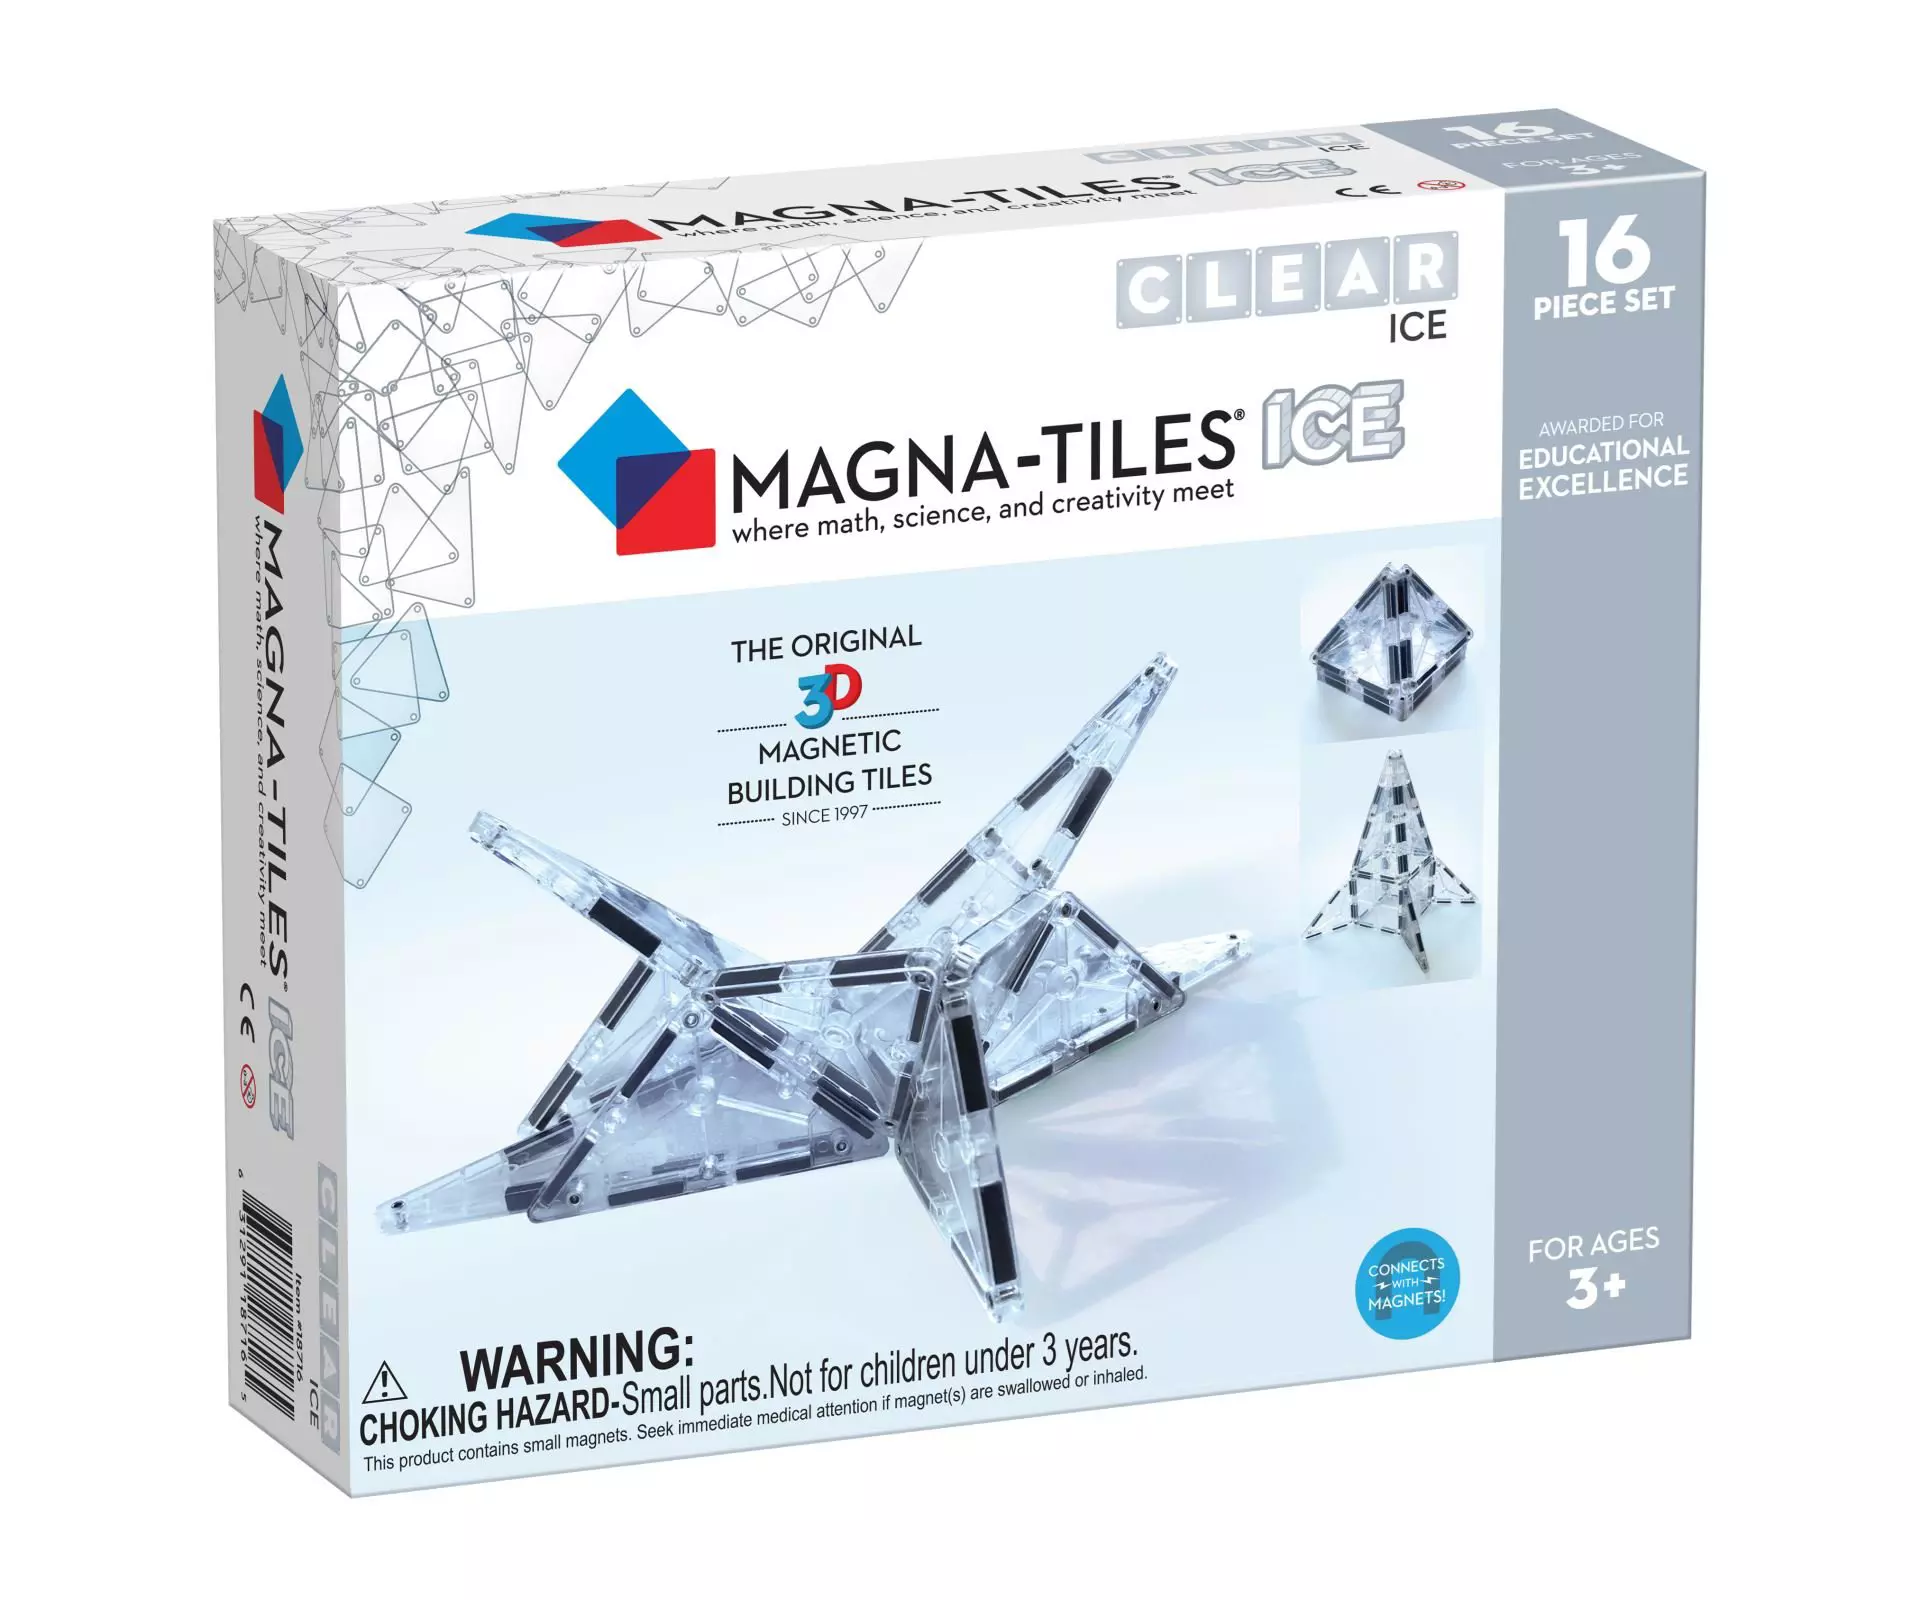 Magna-Tiles Ice Pcs Expansion Set 90214